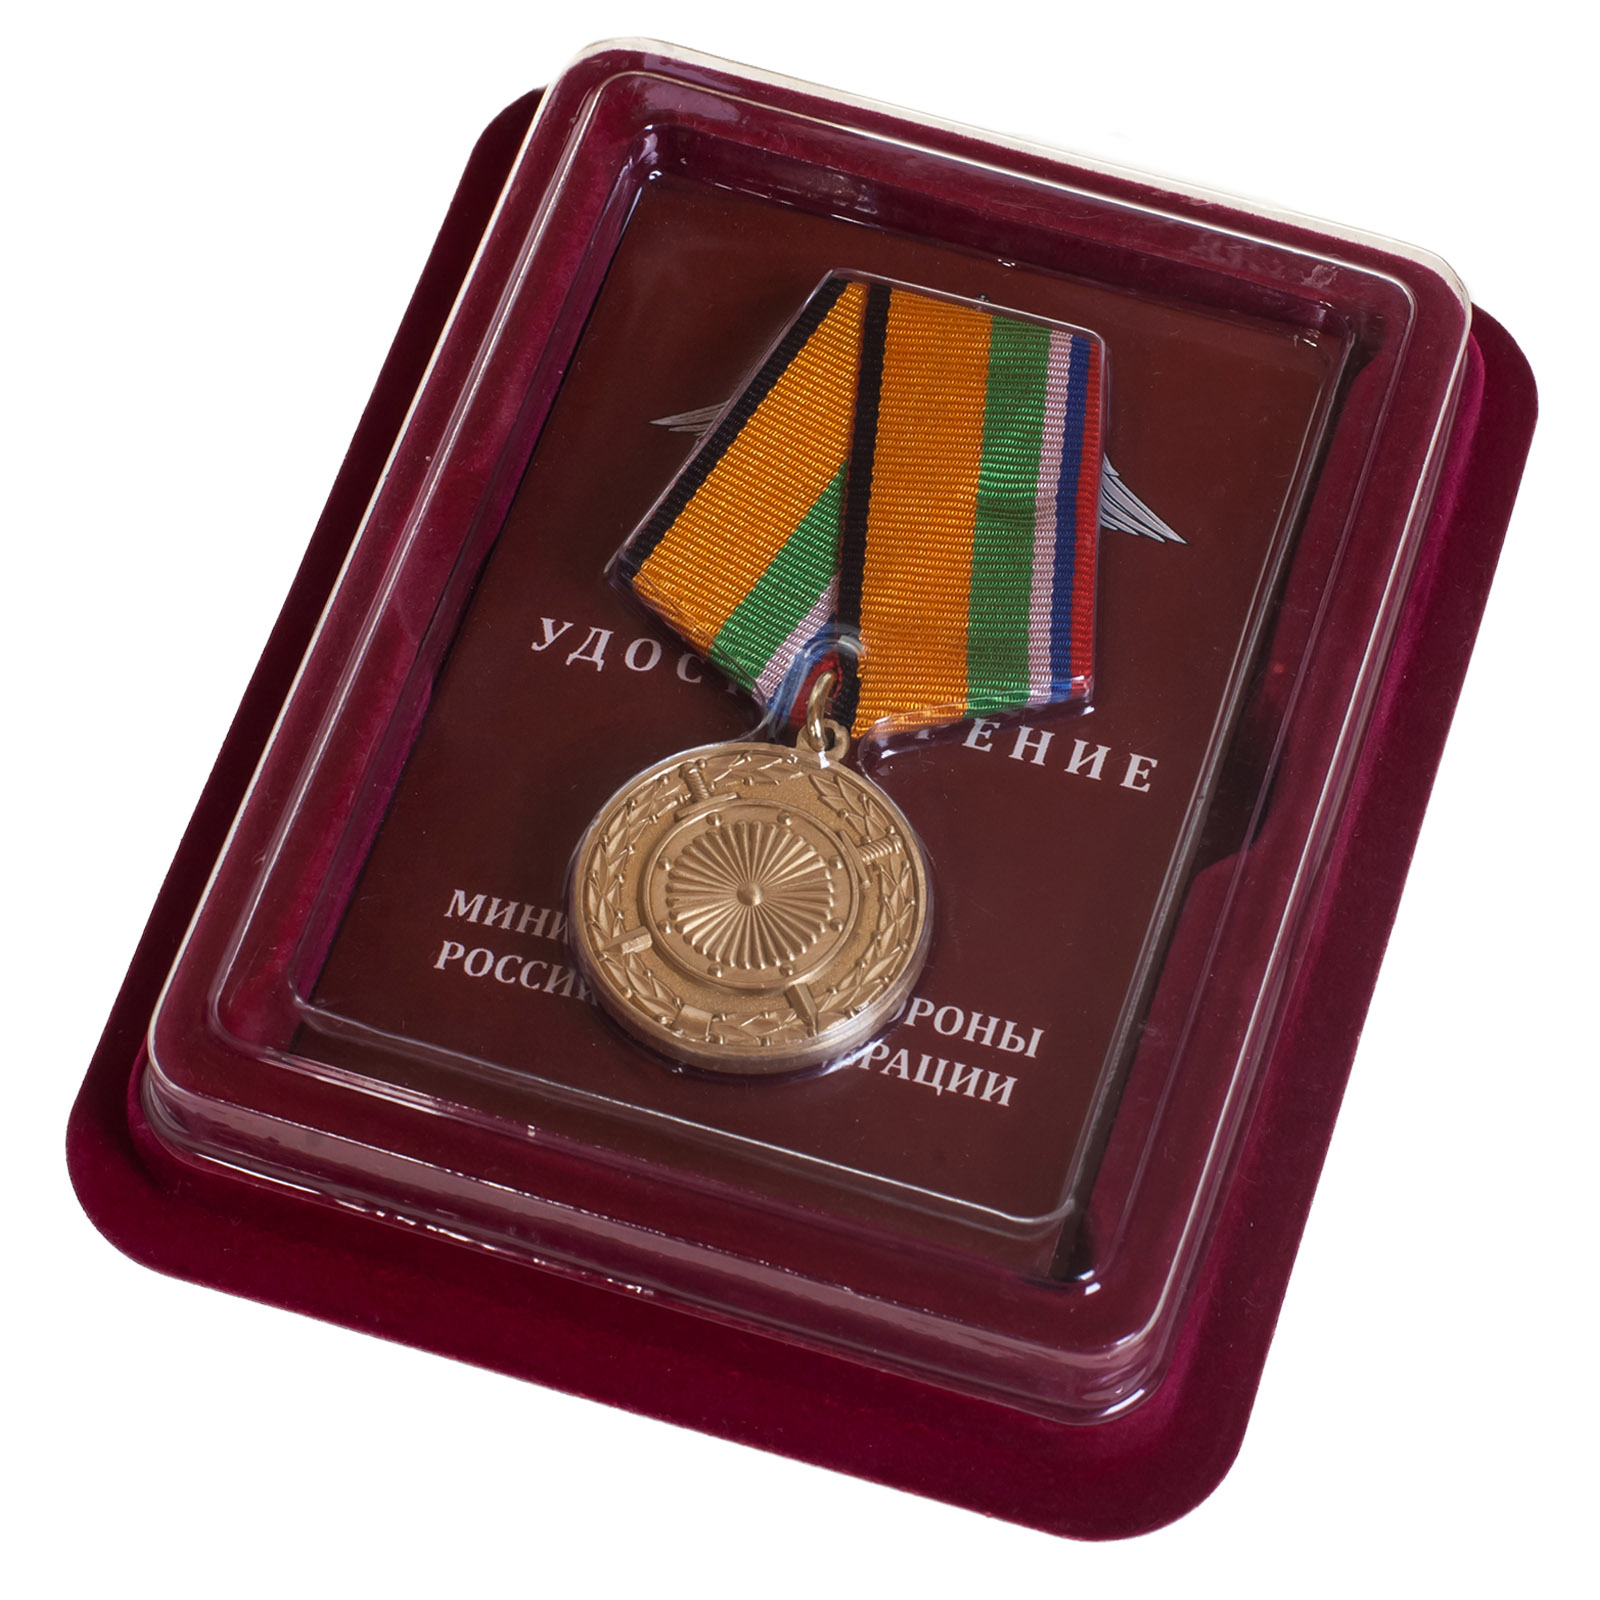 Купить памятную медаль За вклад в укрепление обороны РФ оптом или в розницу